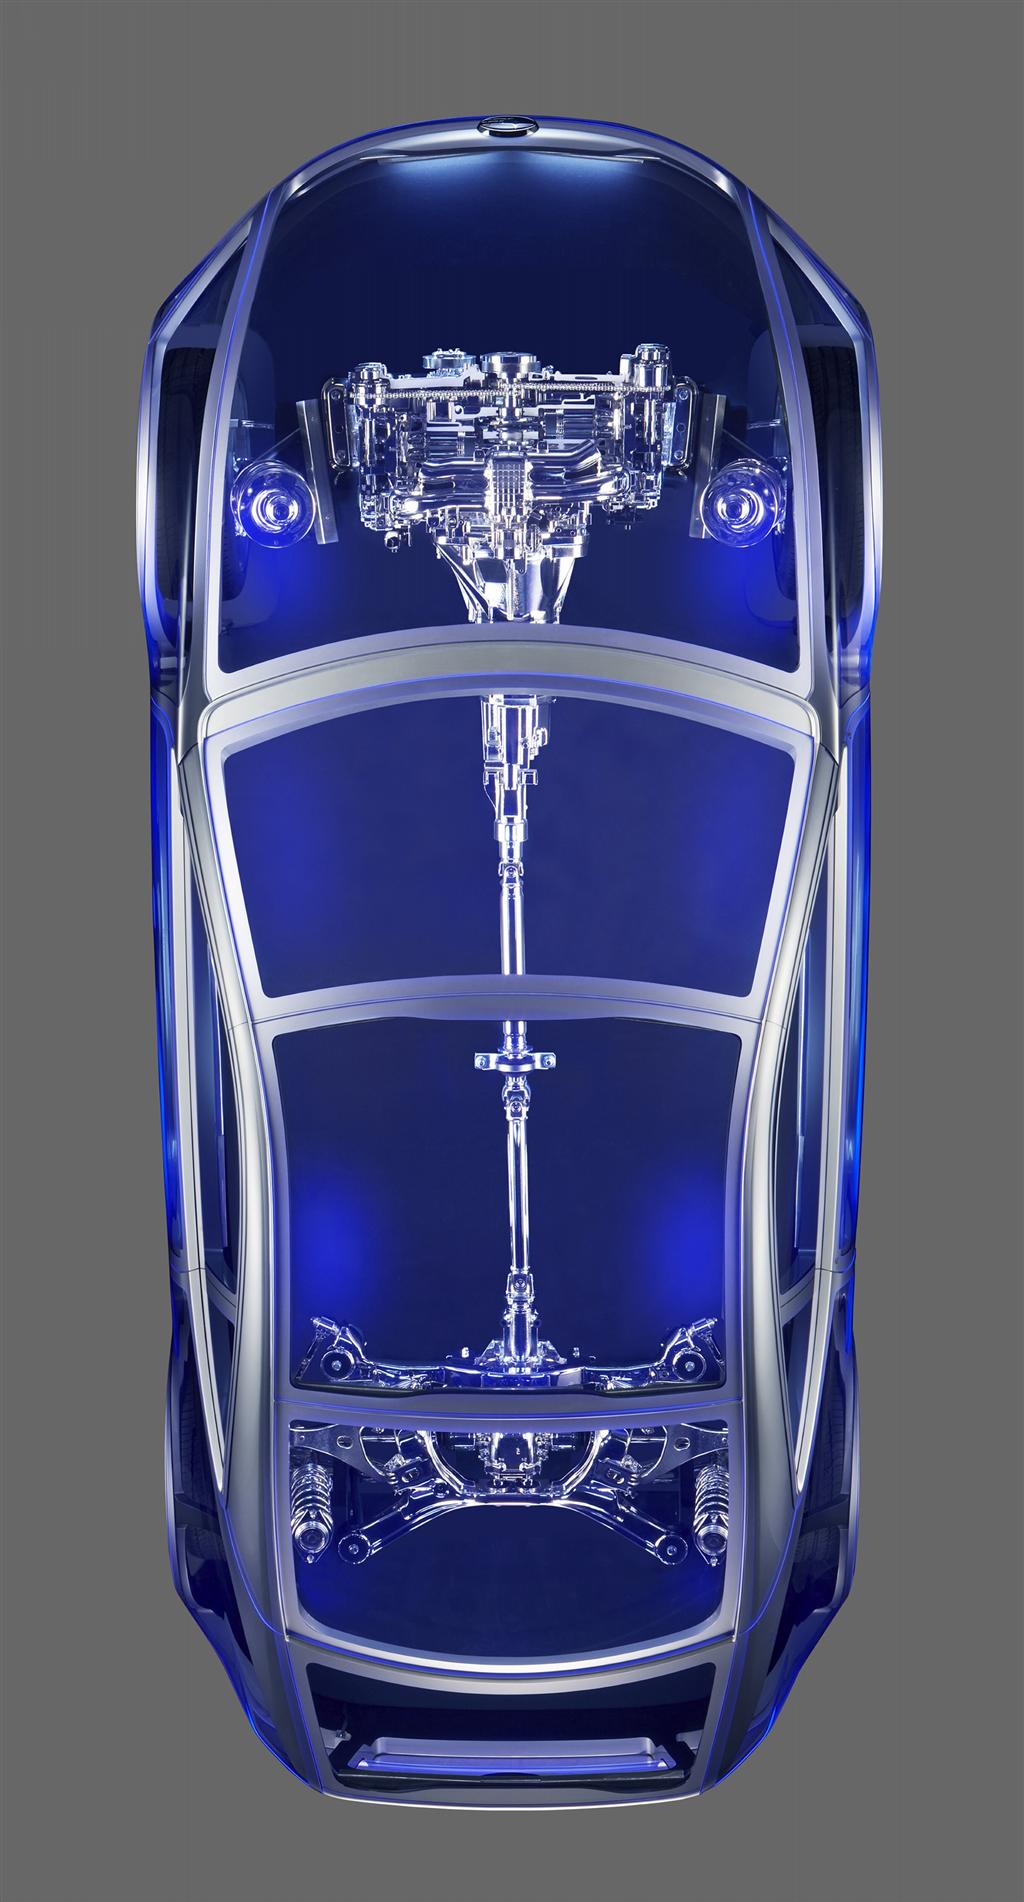 2011 Subaru BOXER Sports Car Architecture